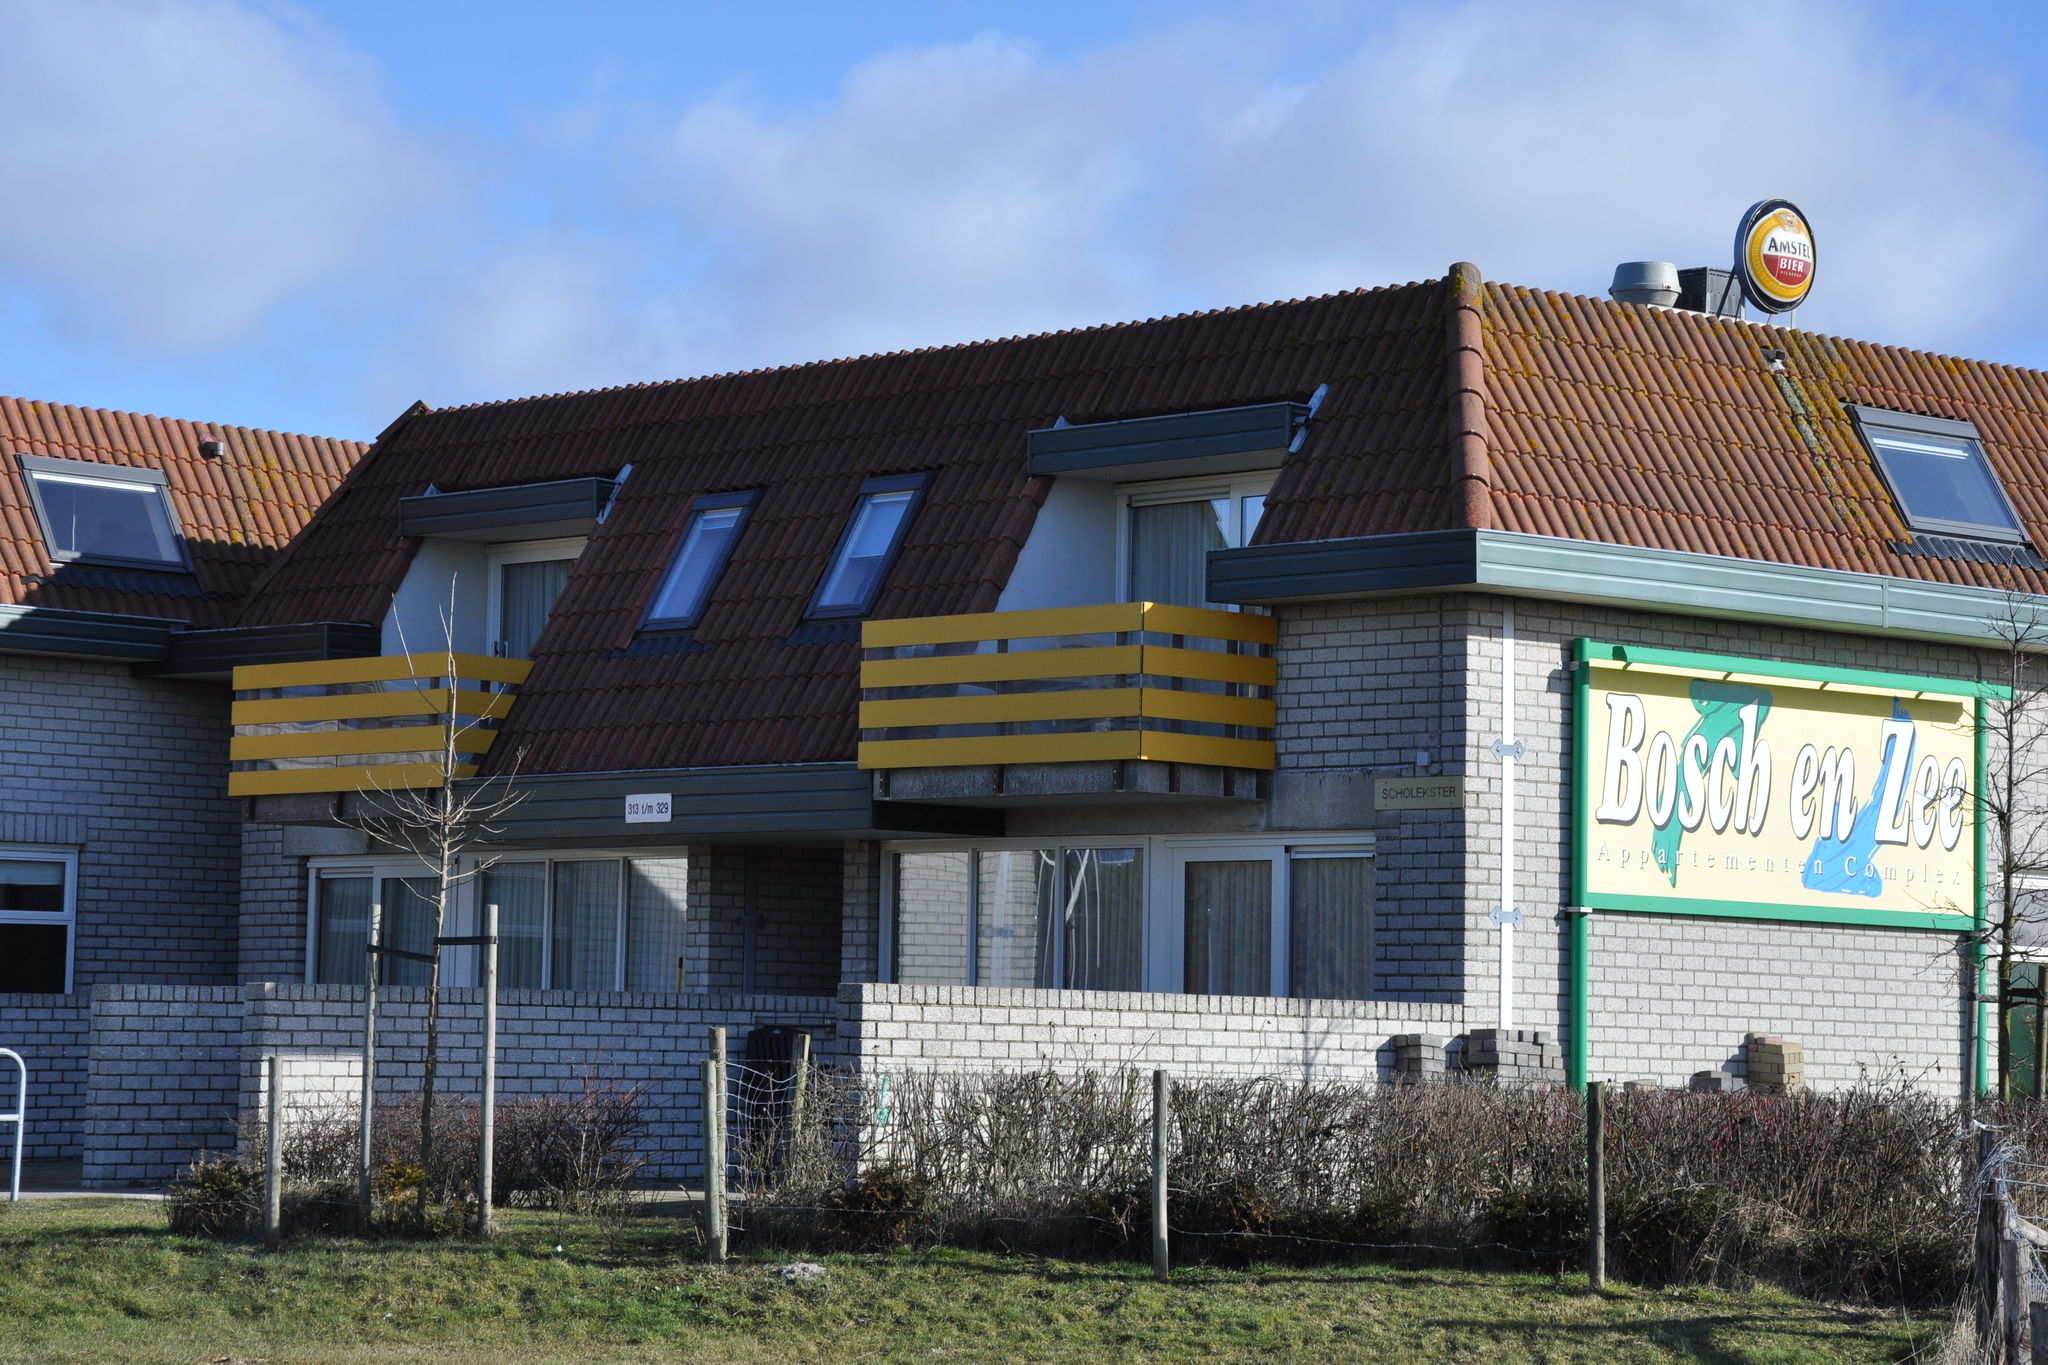 Renovierte Wohnung unweit von Strand und Meer auf Texel